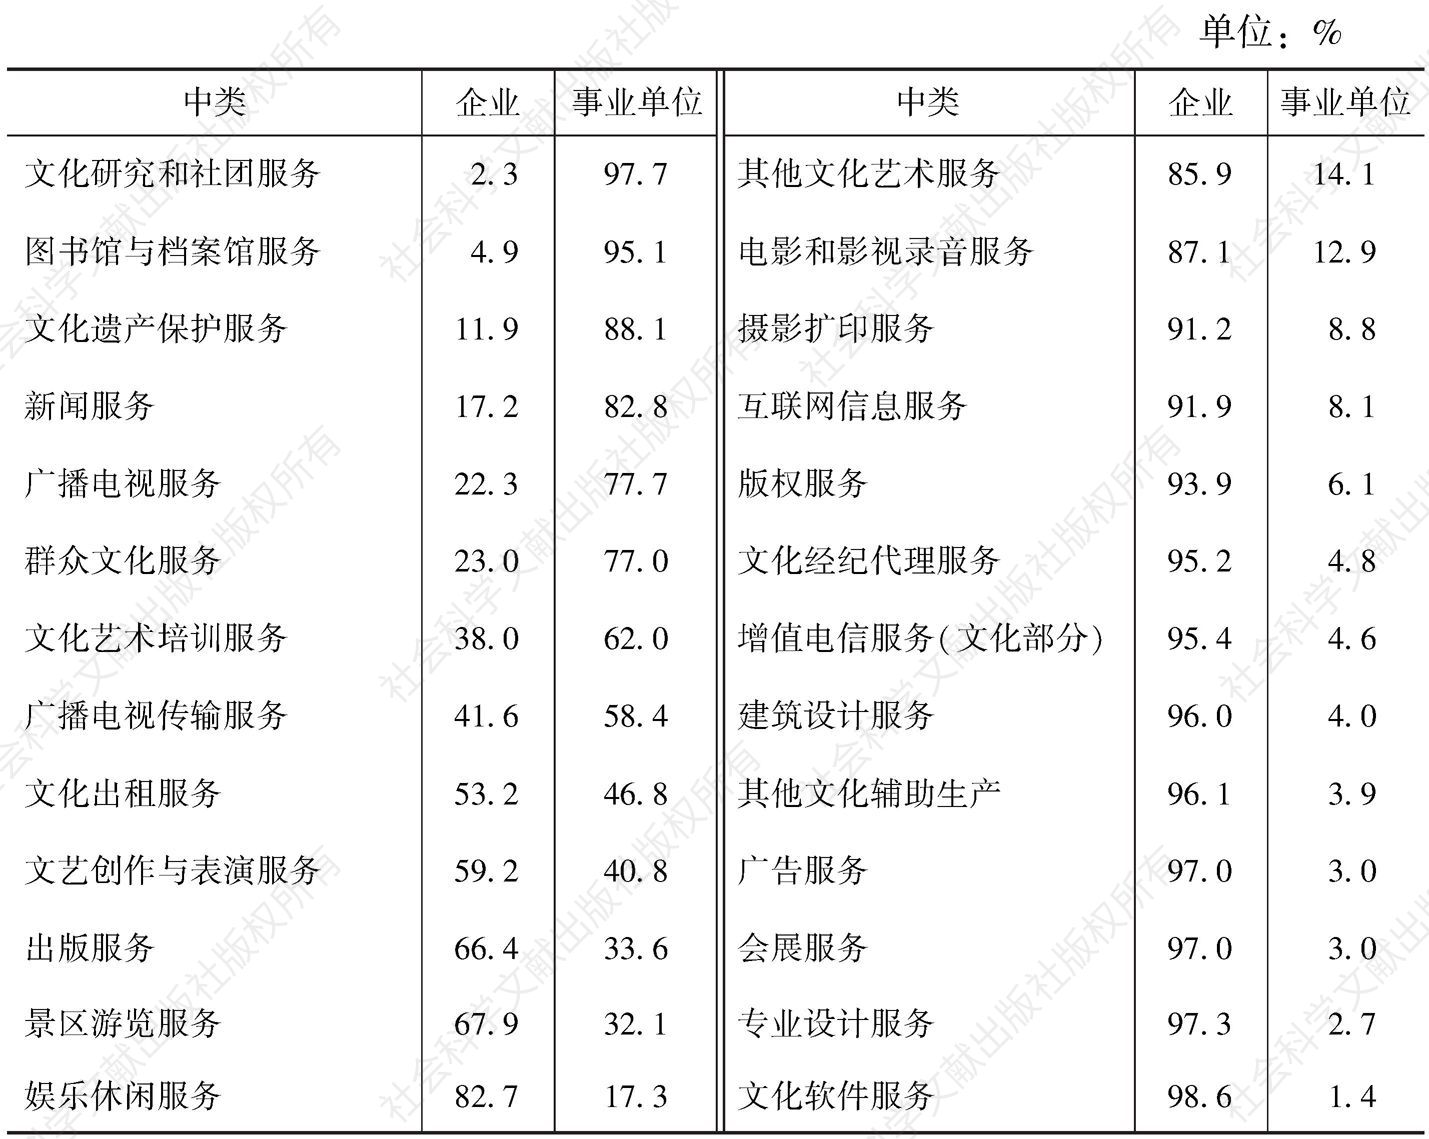 表2-5 2013年26个中类文化法人单位数量中文化企业和事业单位占比